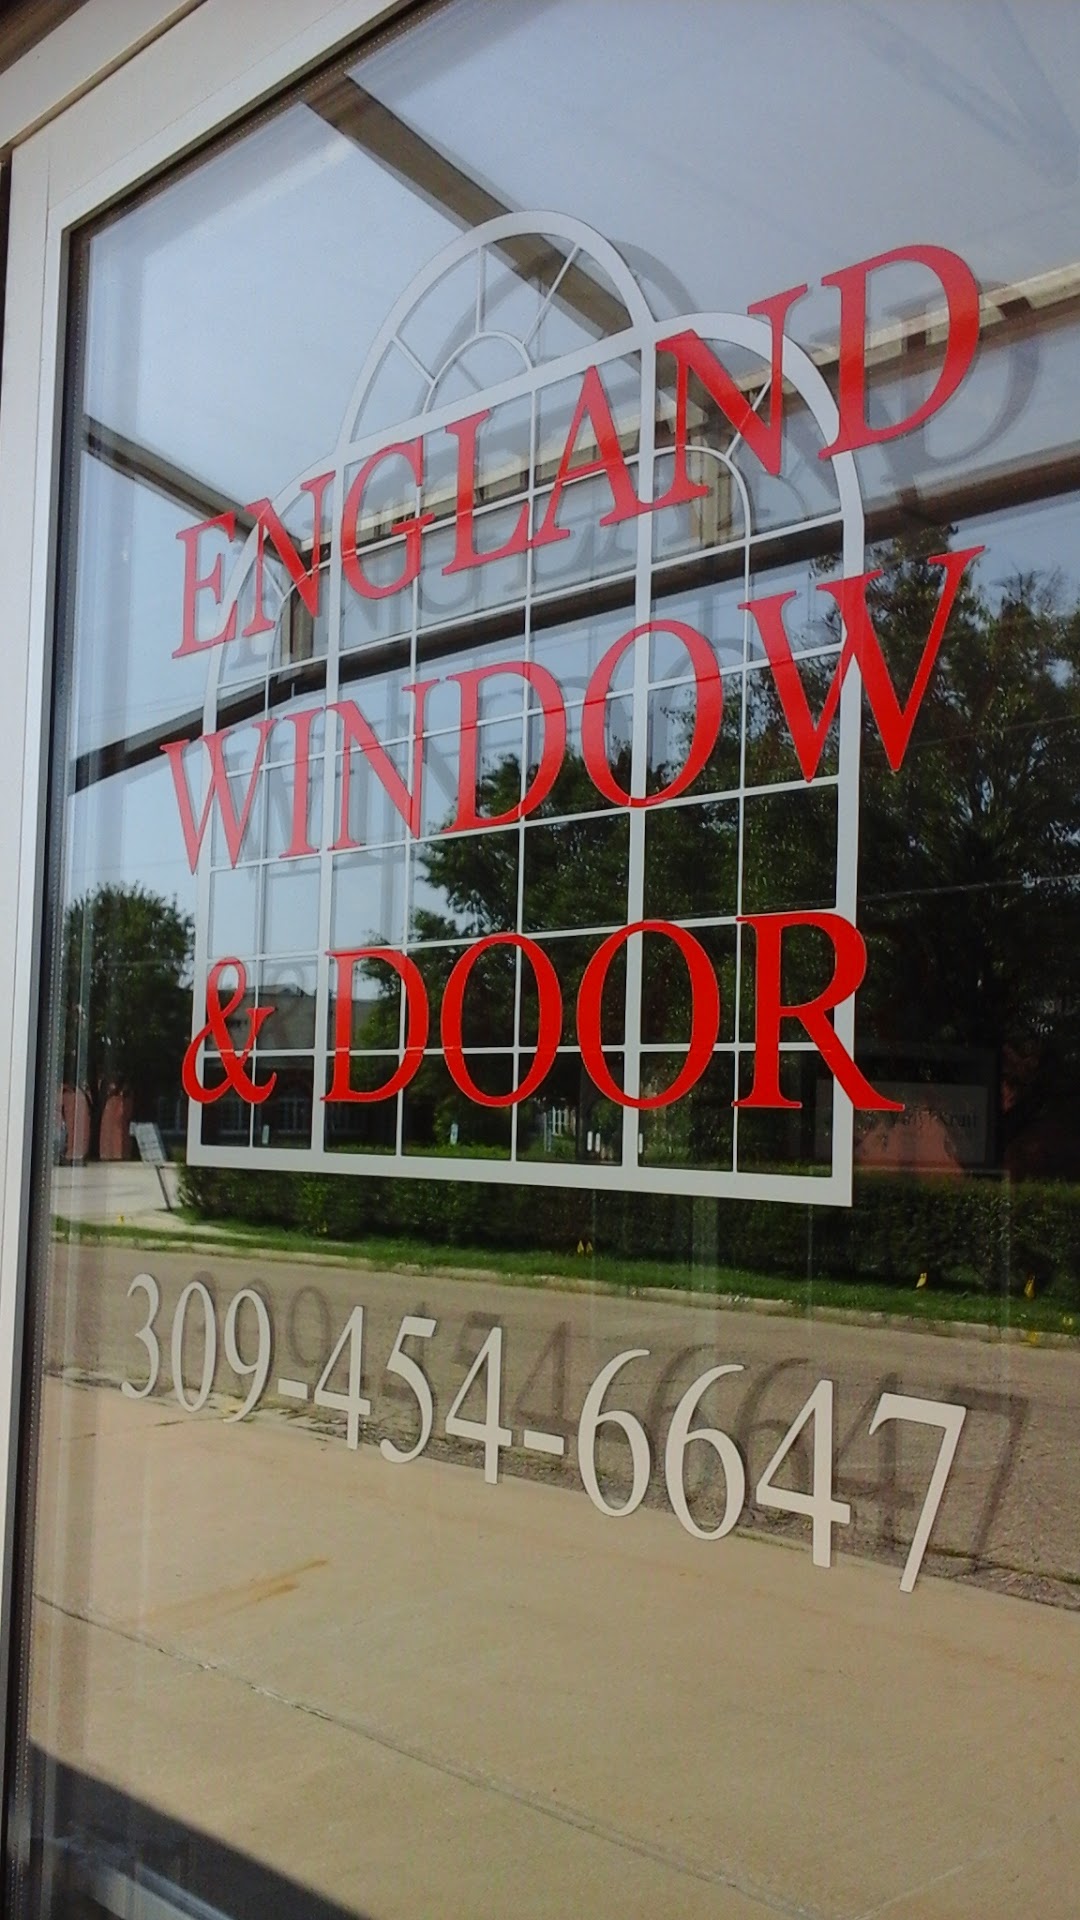 England Window & Door